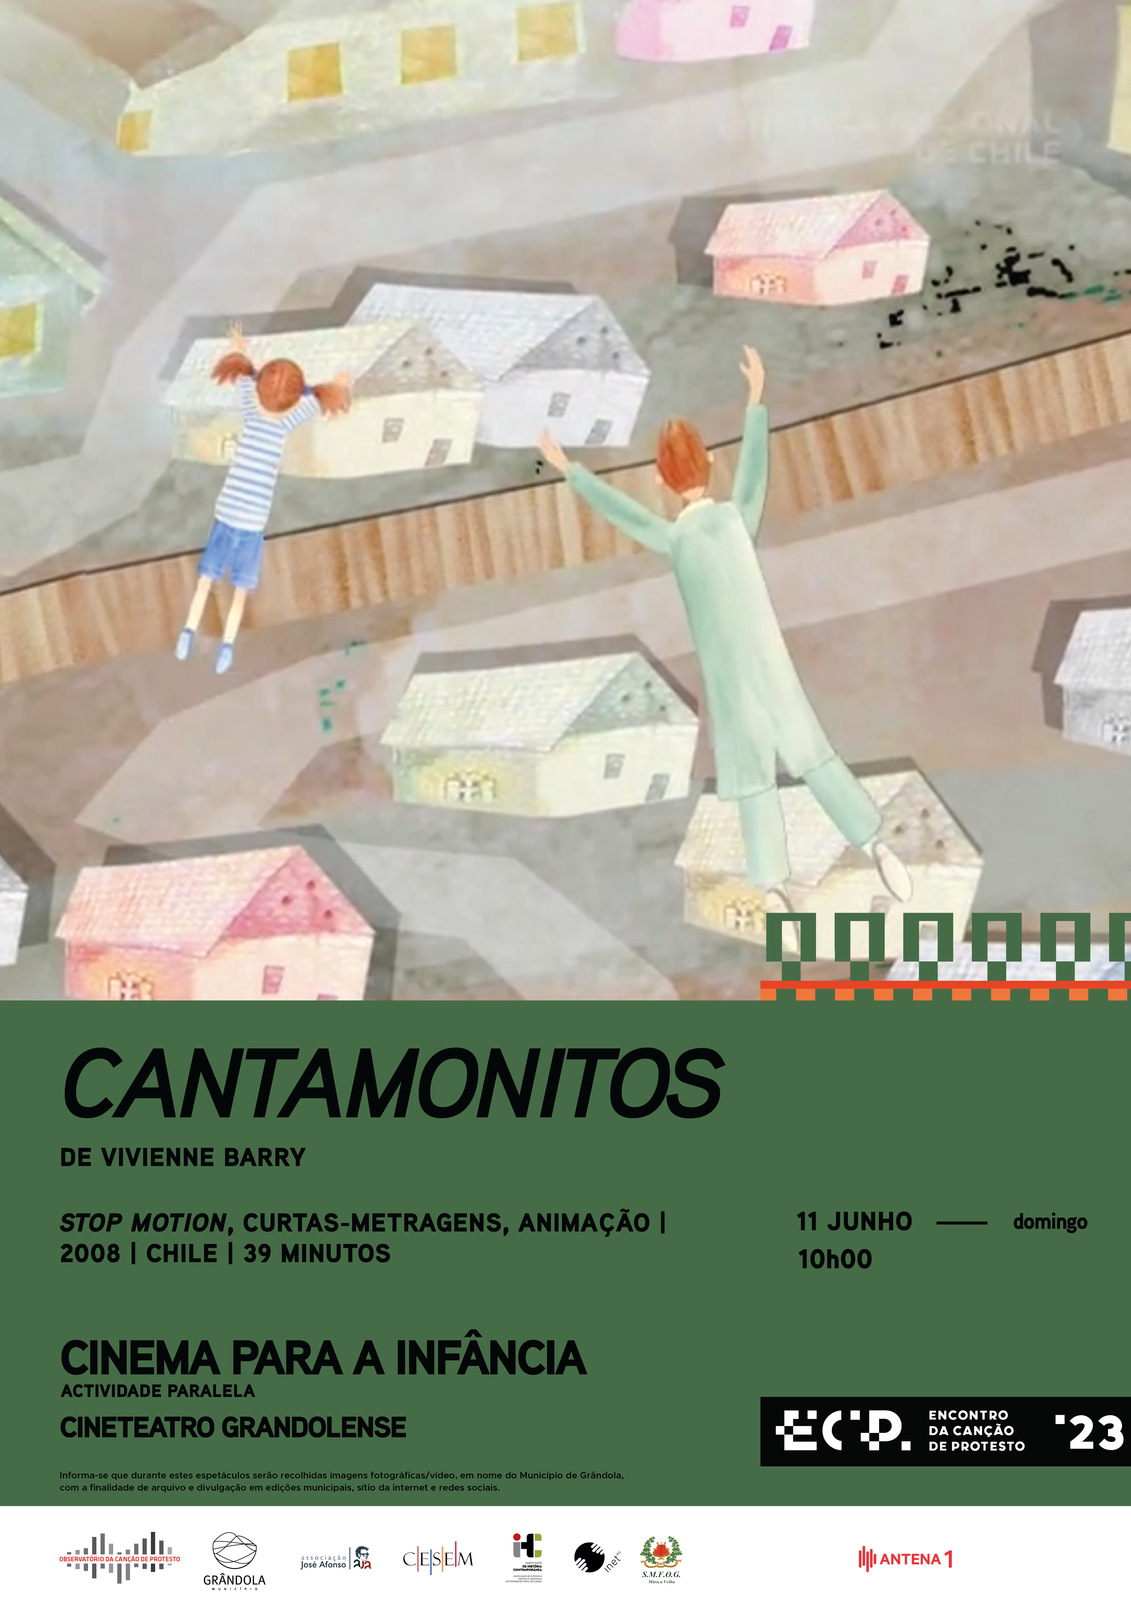 Encontro da Canção de Protesto | Cinema Para a Infância  «Cantamonitos»